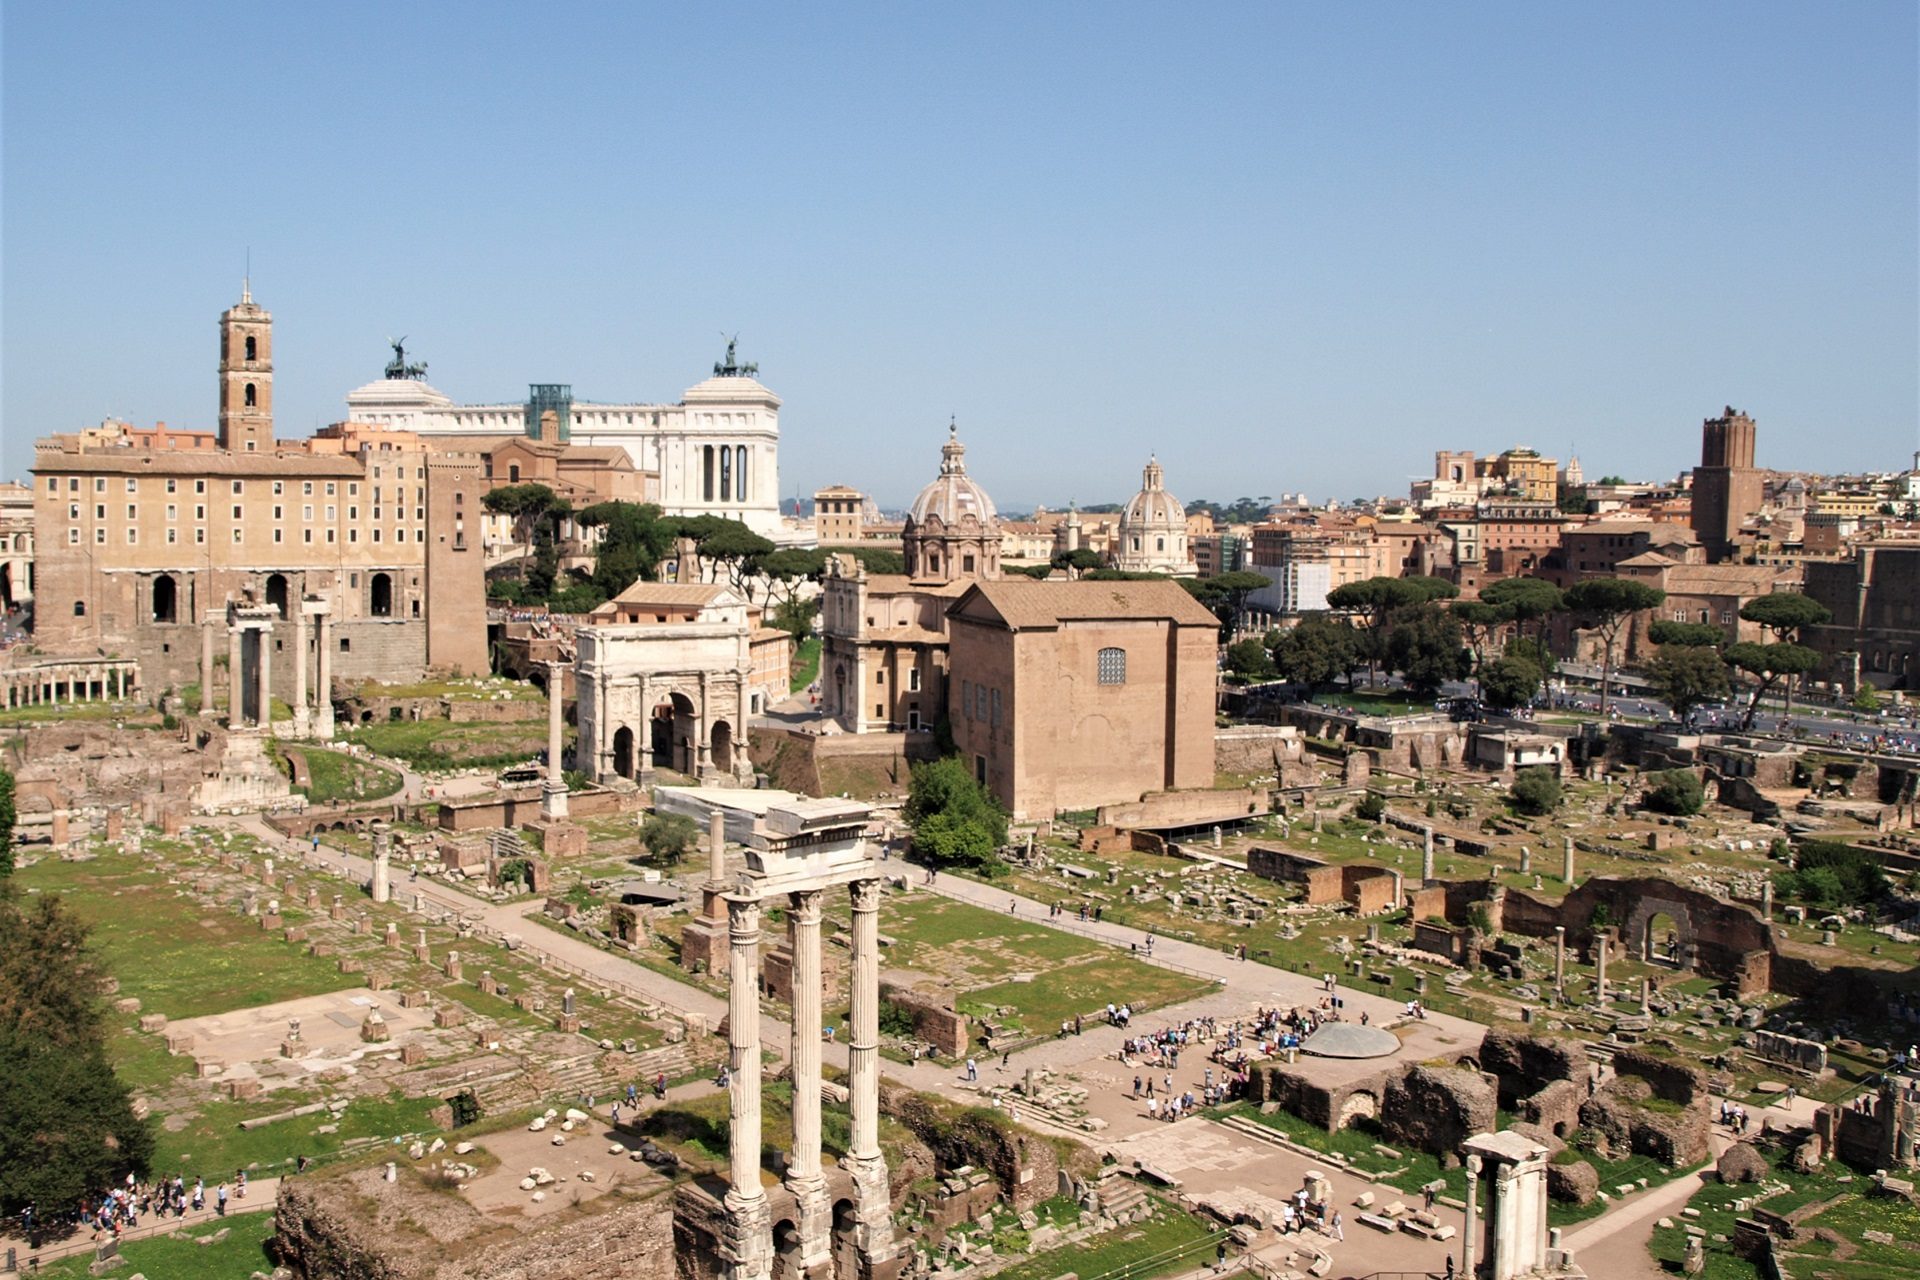 Forum Romanum widok na cały plac i ruiny z czasów republiki